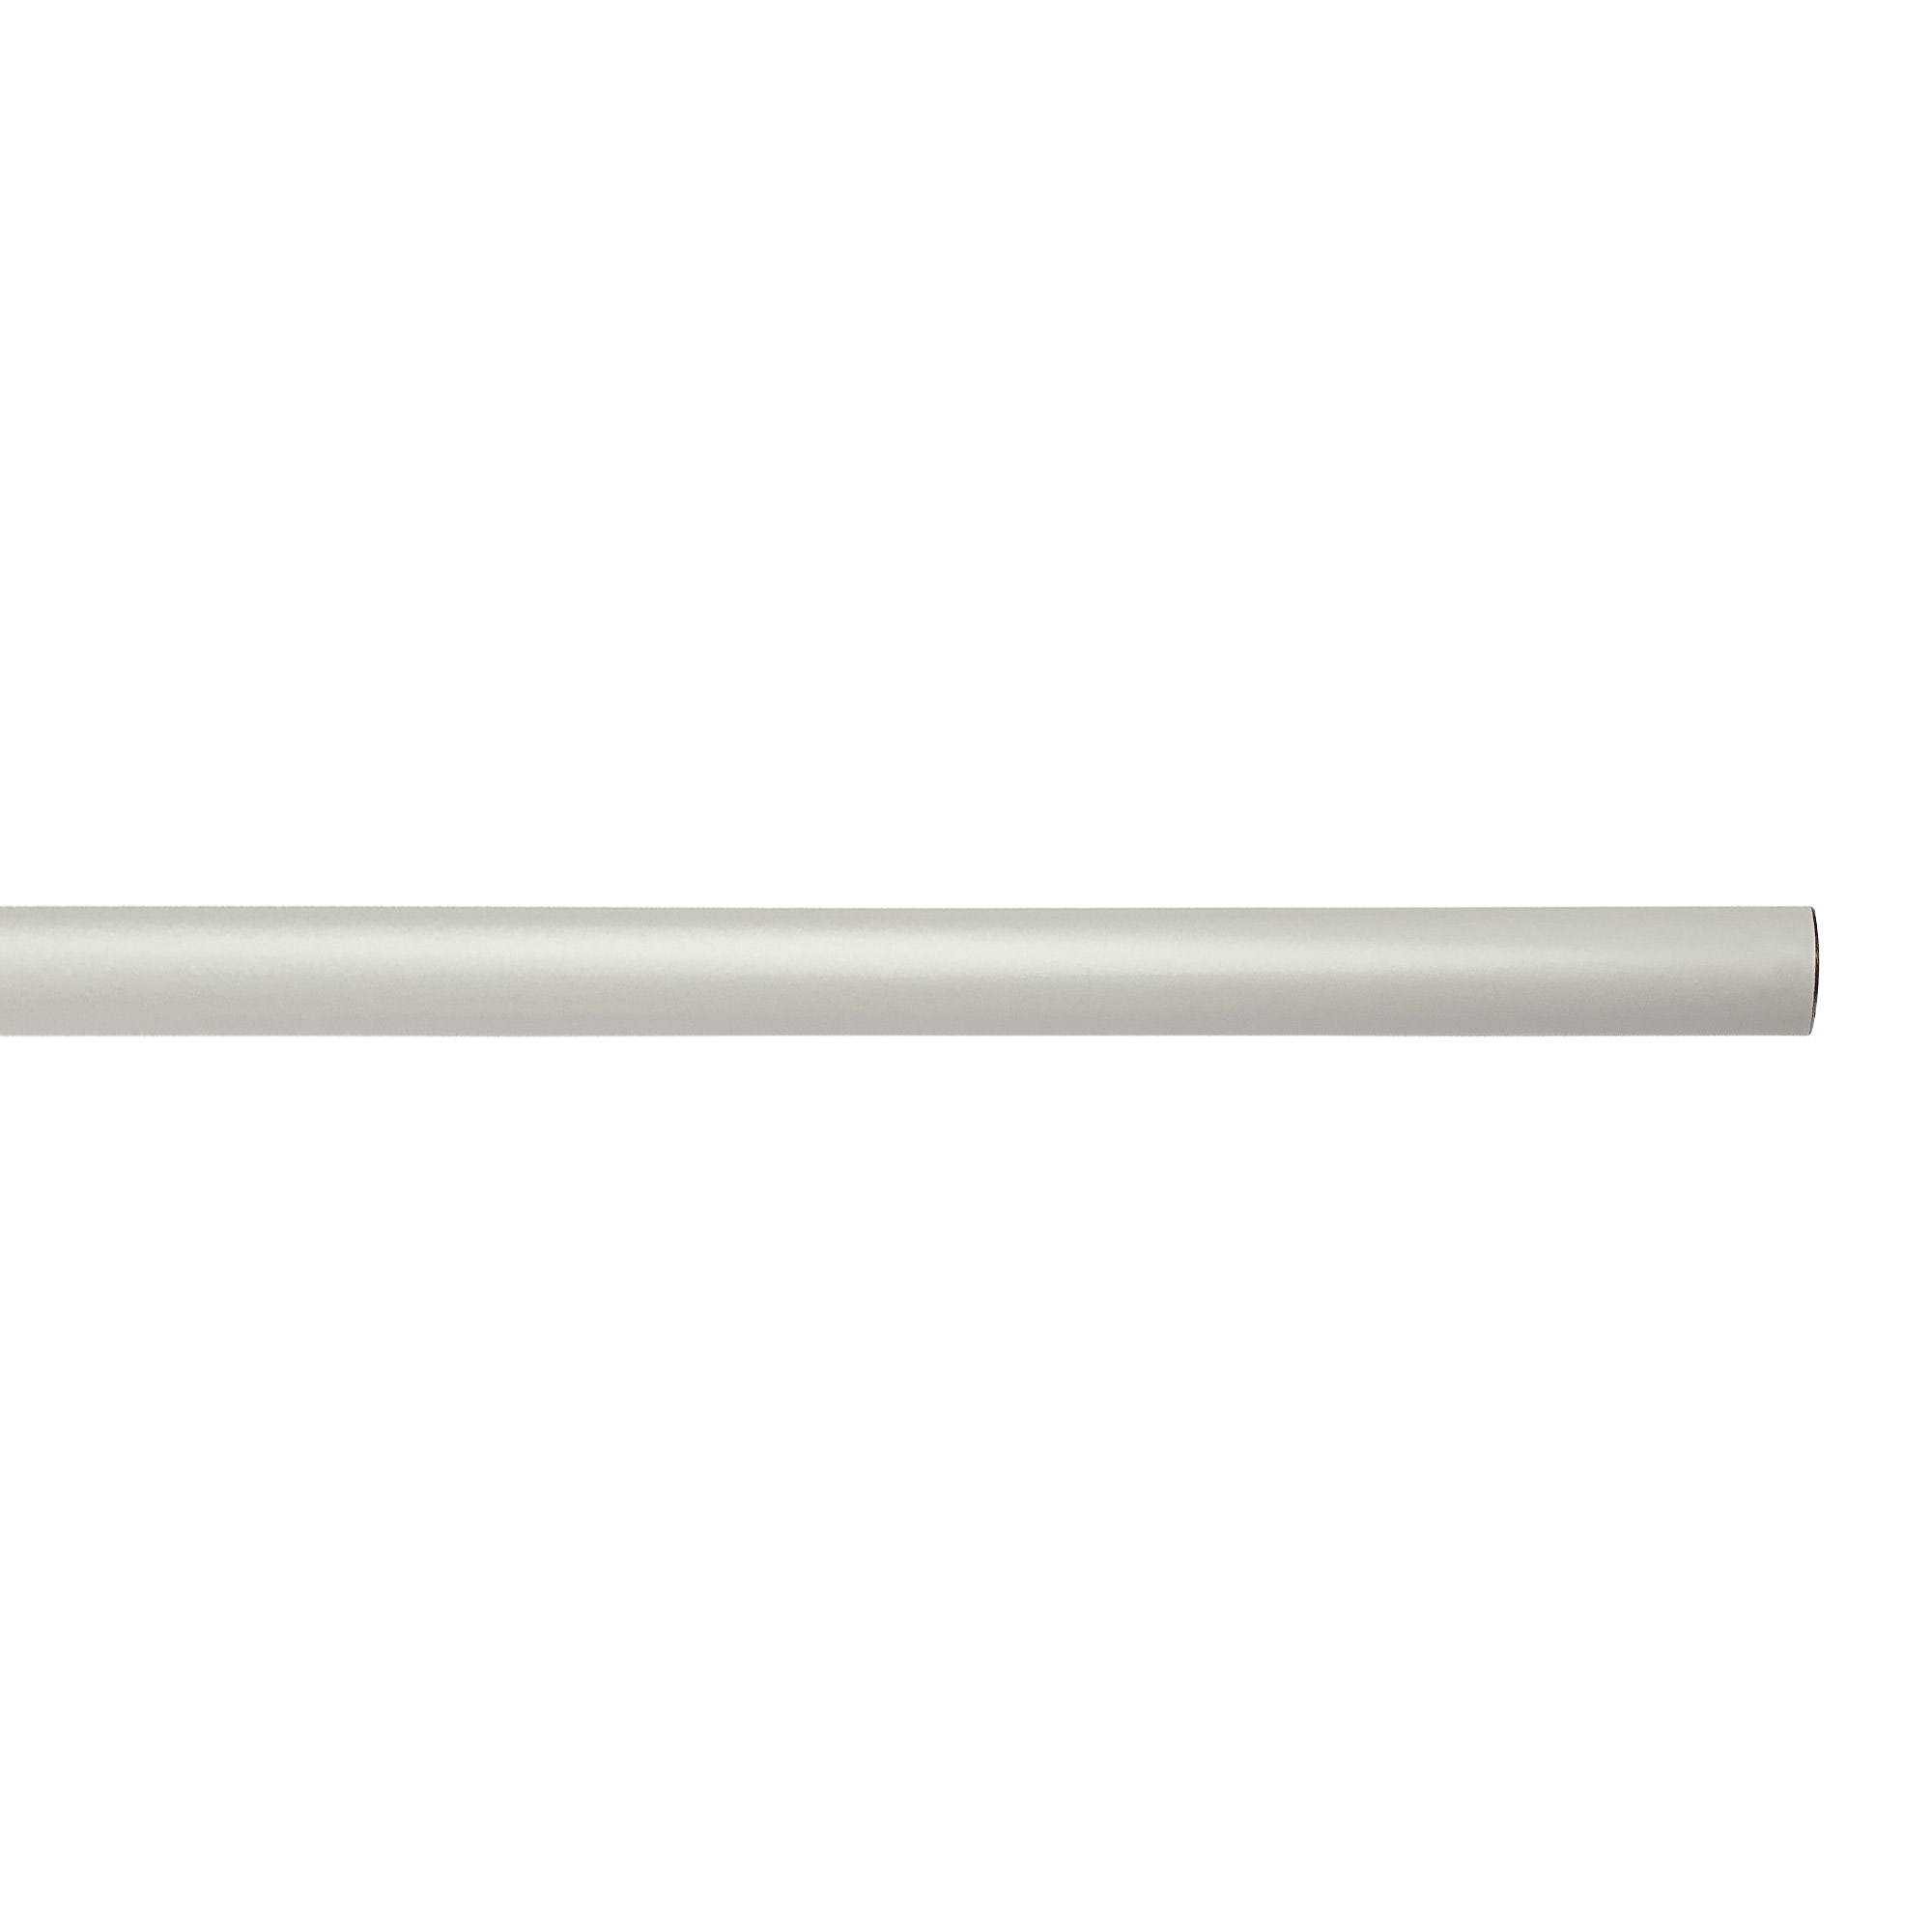 アイアンハンガーパイプ L型-天井吊タイプ H500 ホワイト PS-HB008-68-G141 水平パイプは3サイズから選択可能です